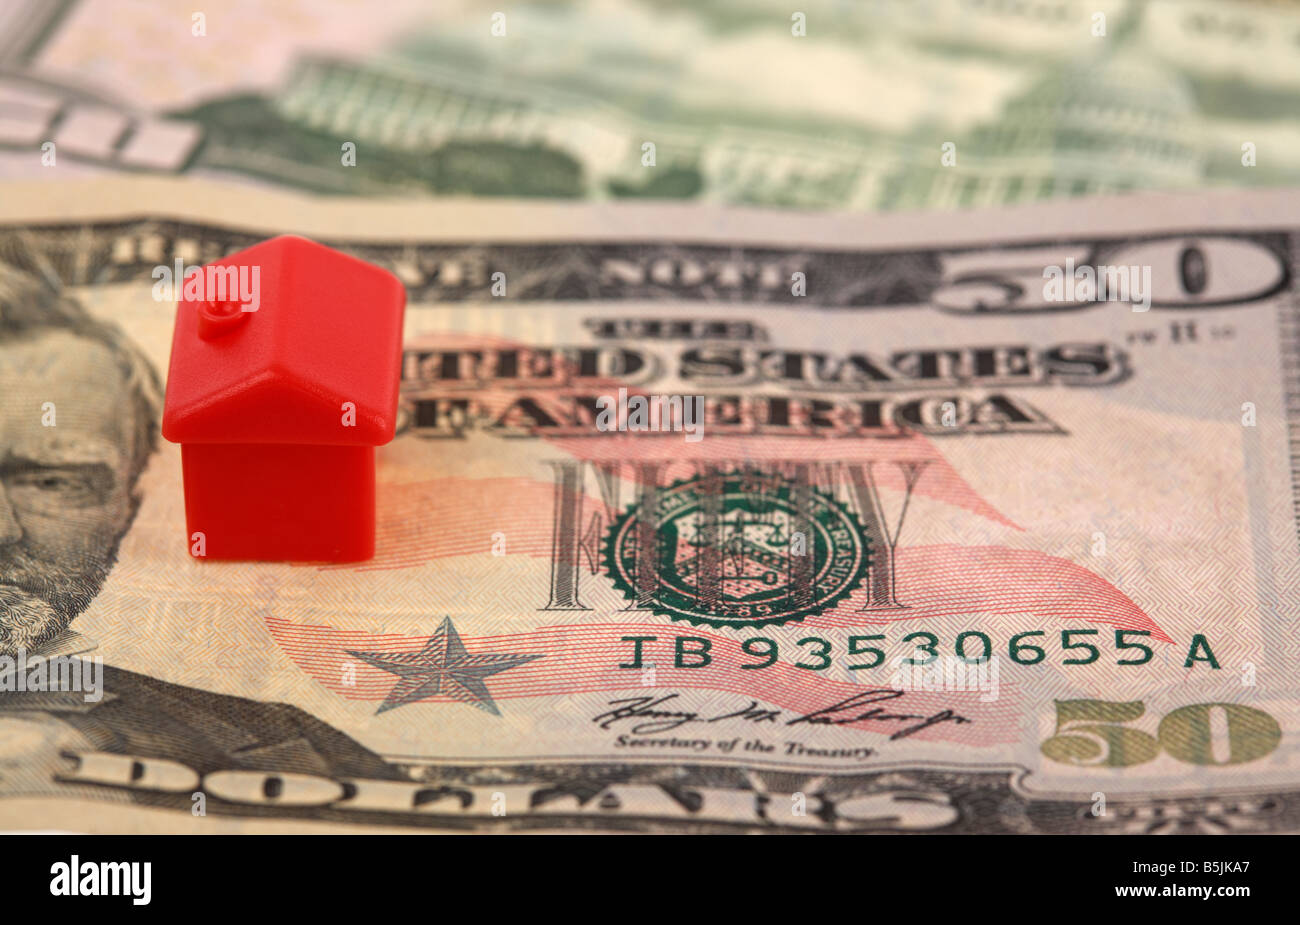 una casa rossa in cima ad un mucchio di banconote da 50 dollari usa concetto di cassa per i prestiti a casa immobiliare immobiliare immobiliare immobiliare immobiliare casa ipoteche economia crisi del debito Foto Stock